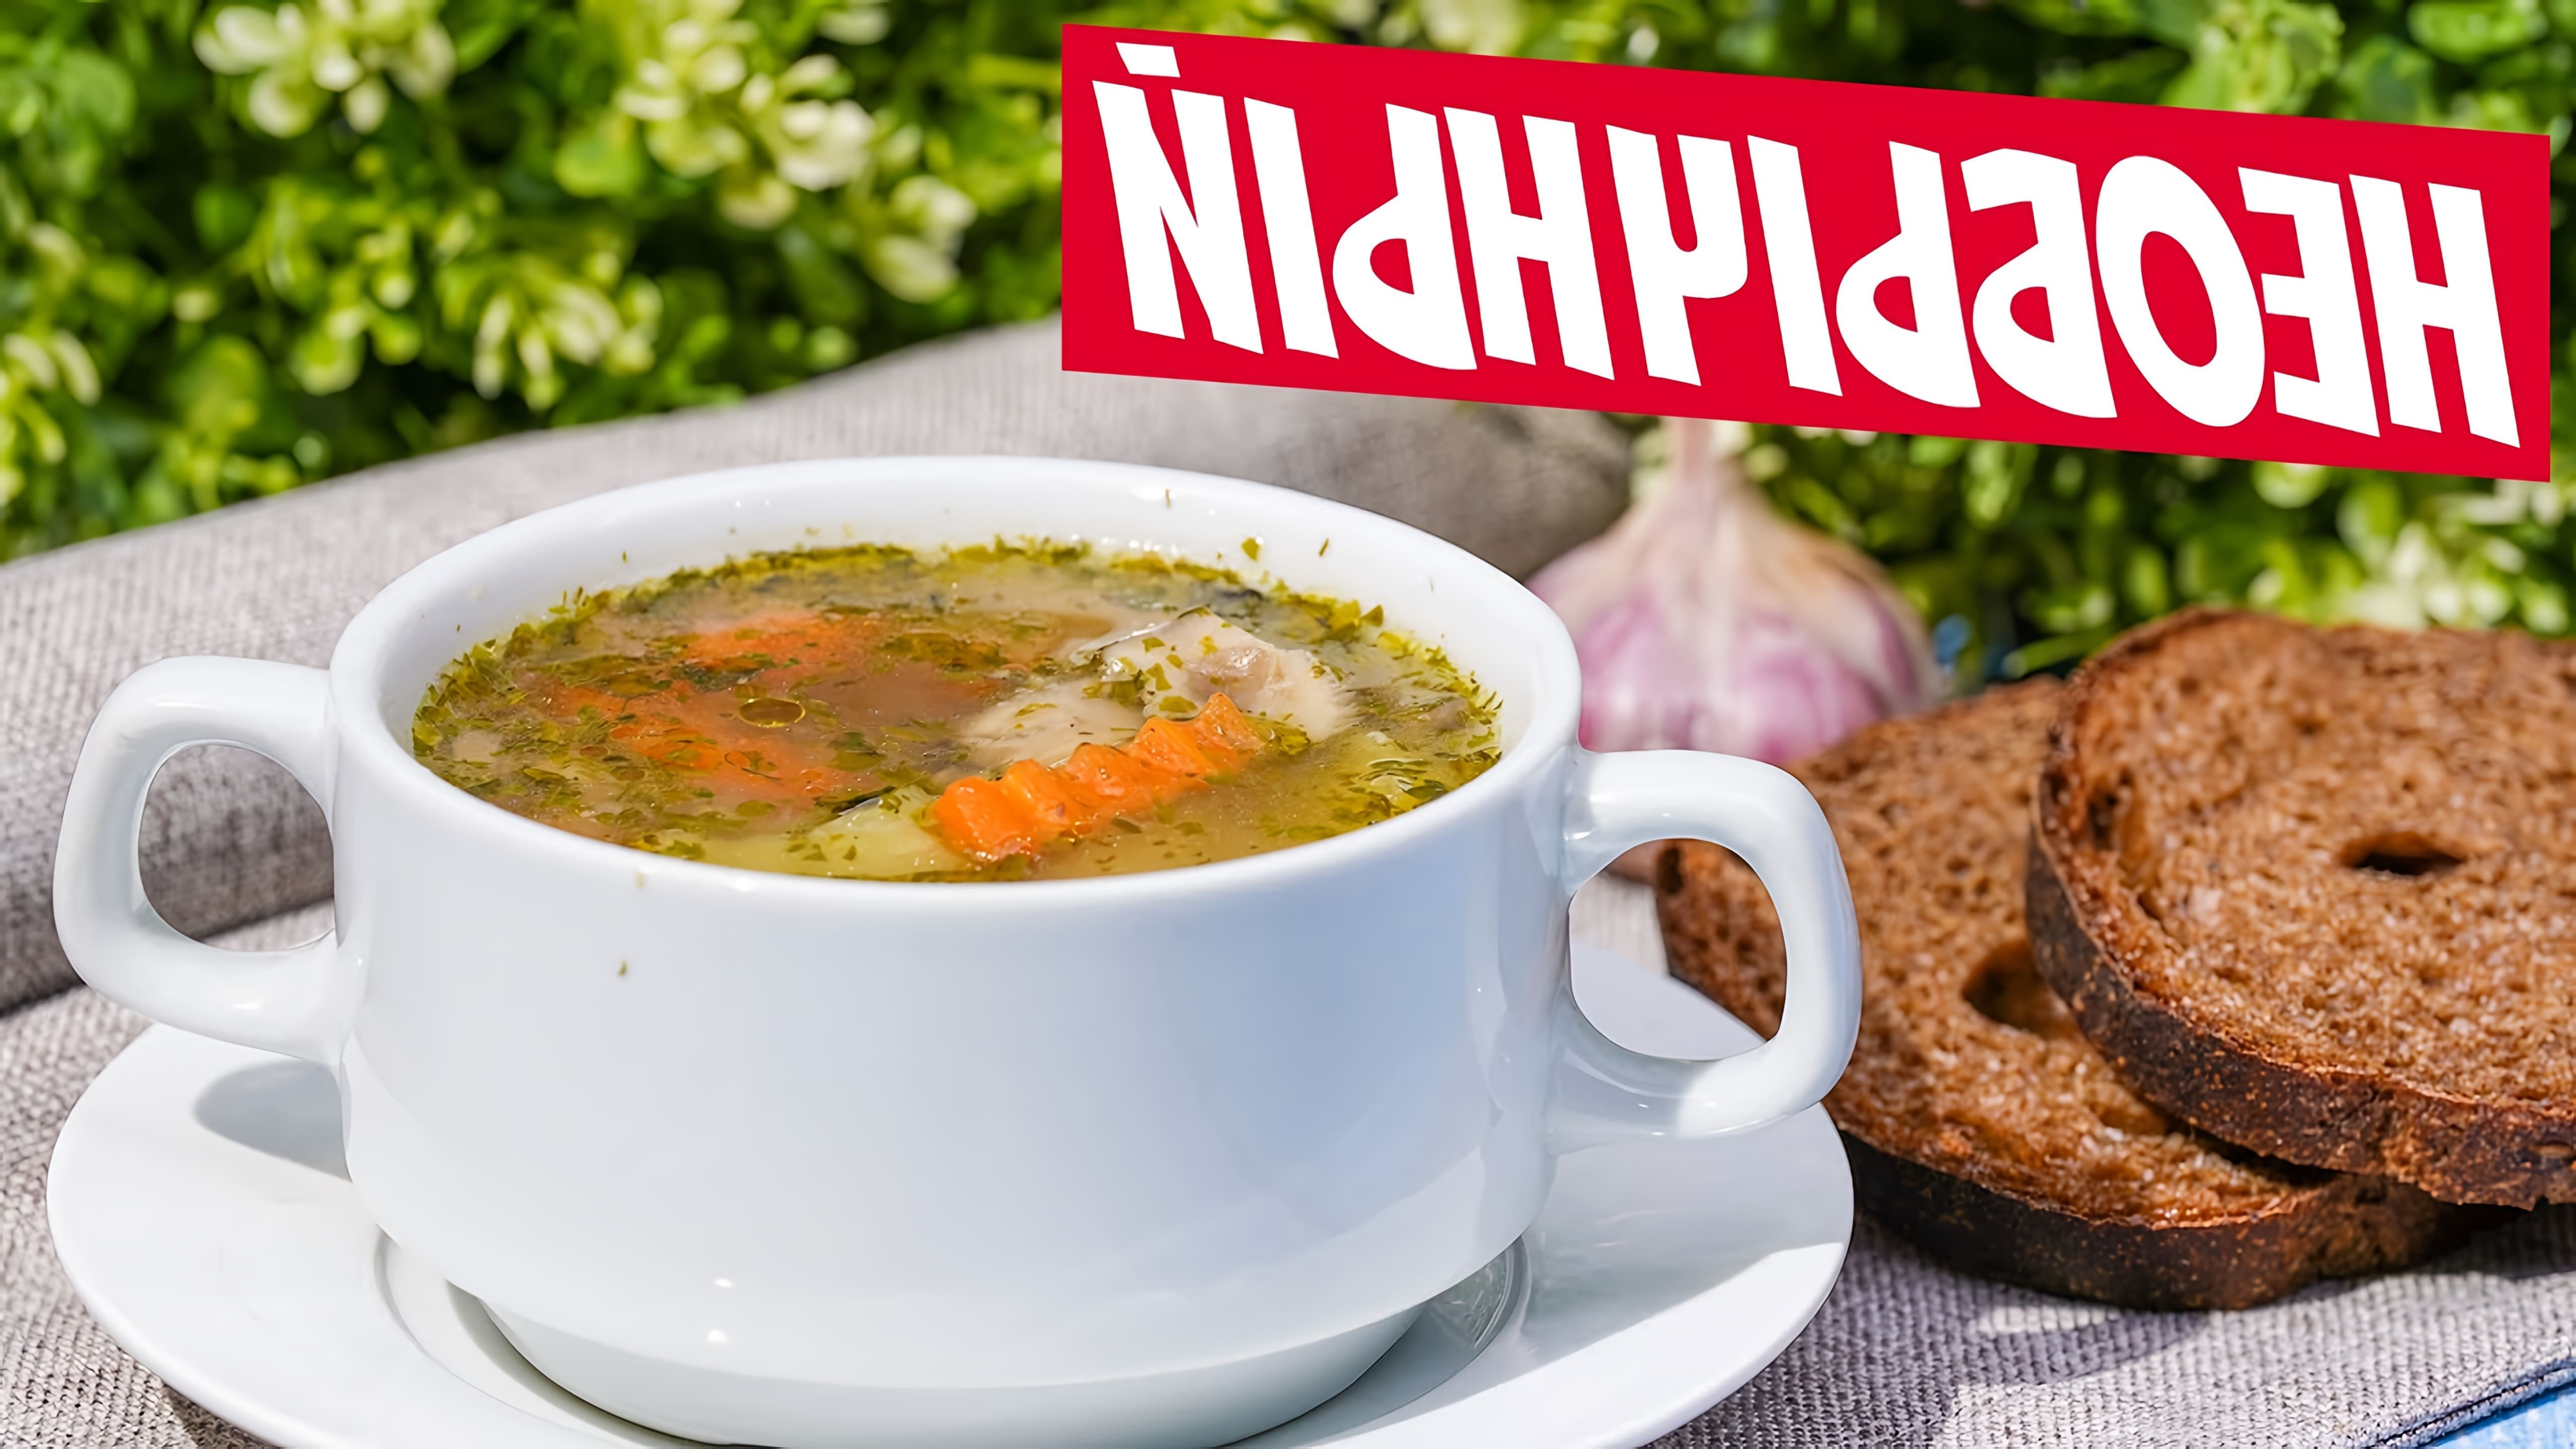 В этом видео демонстрируется рецепт грибного супа с гречкой без использования масла